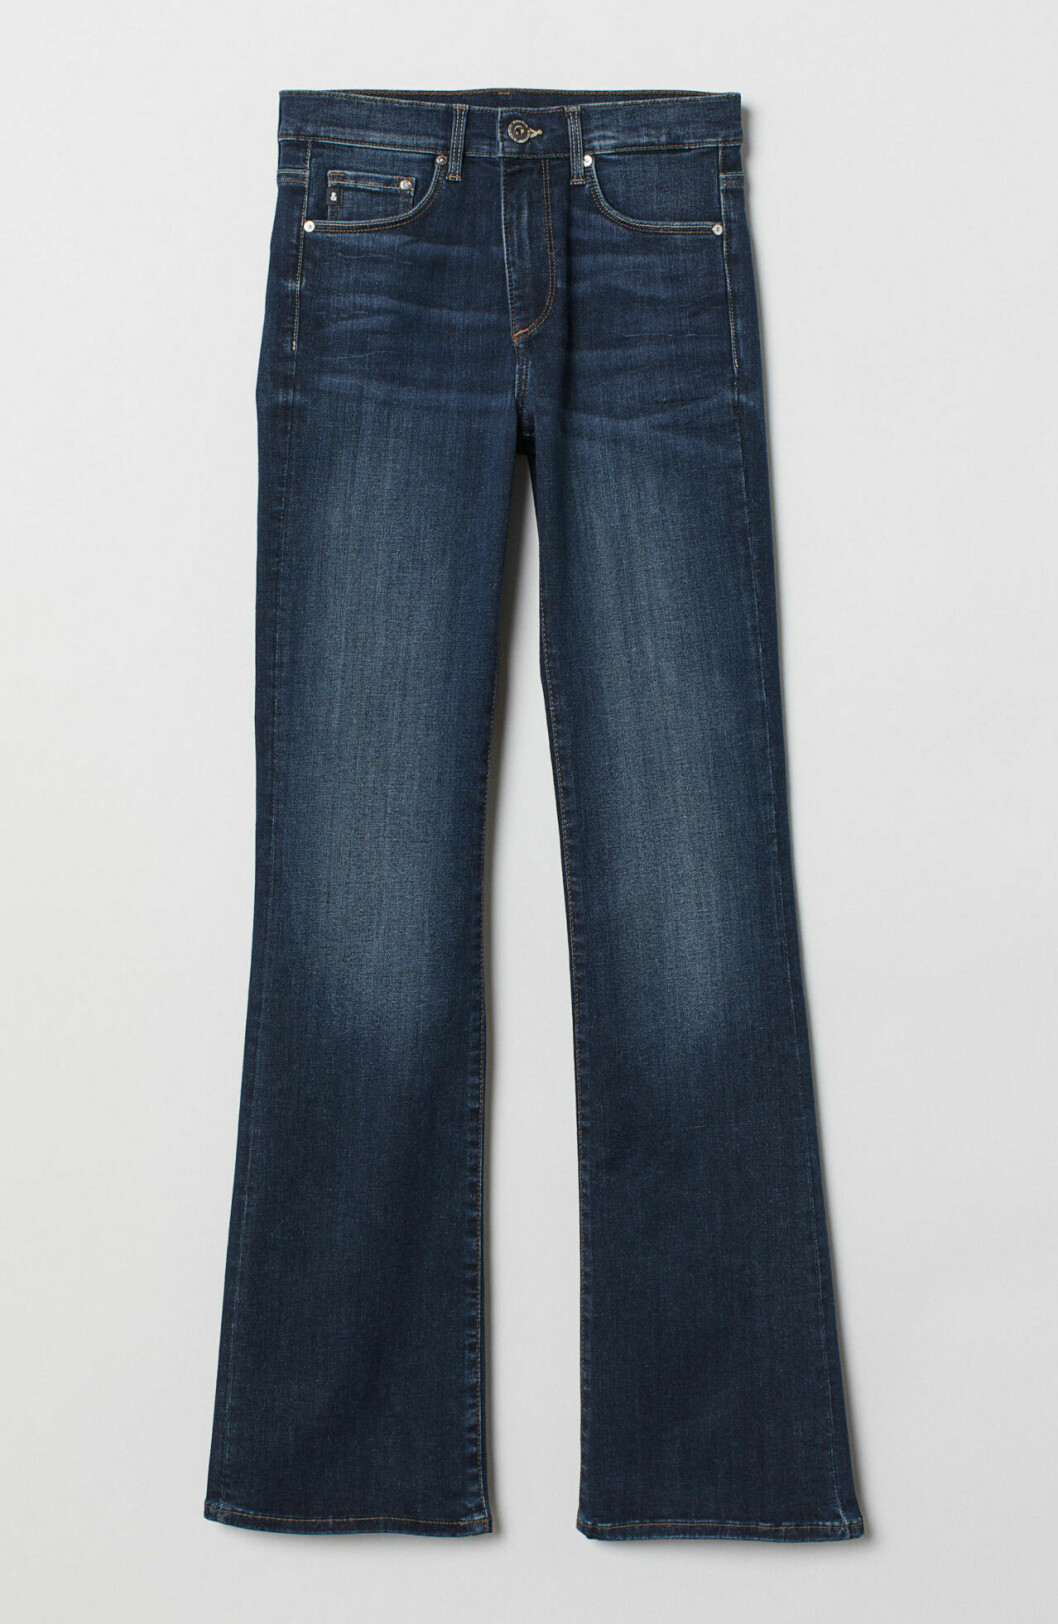 Jeans för dam till våren 2019 i bootcut-modell